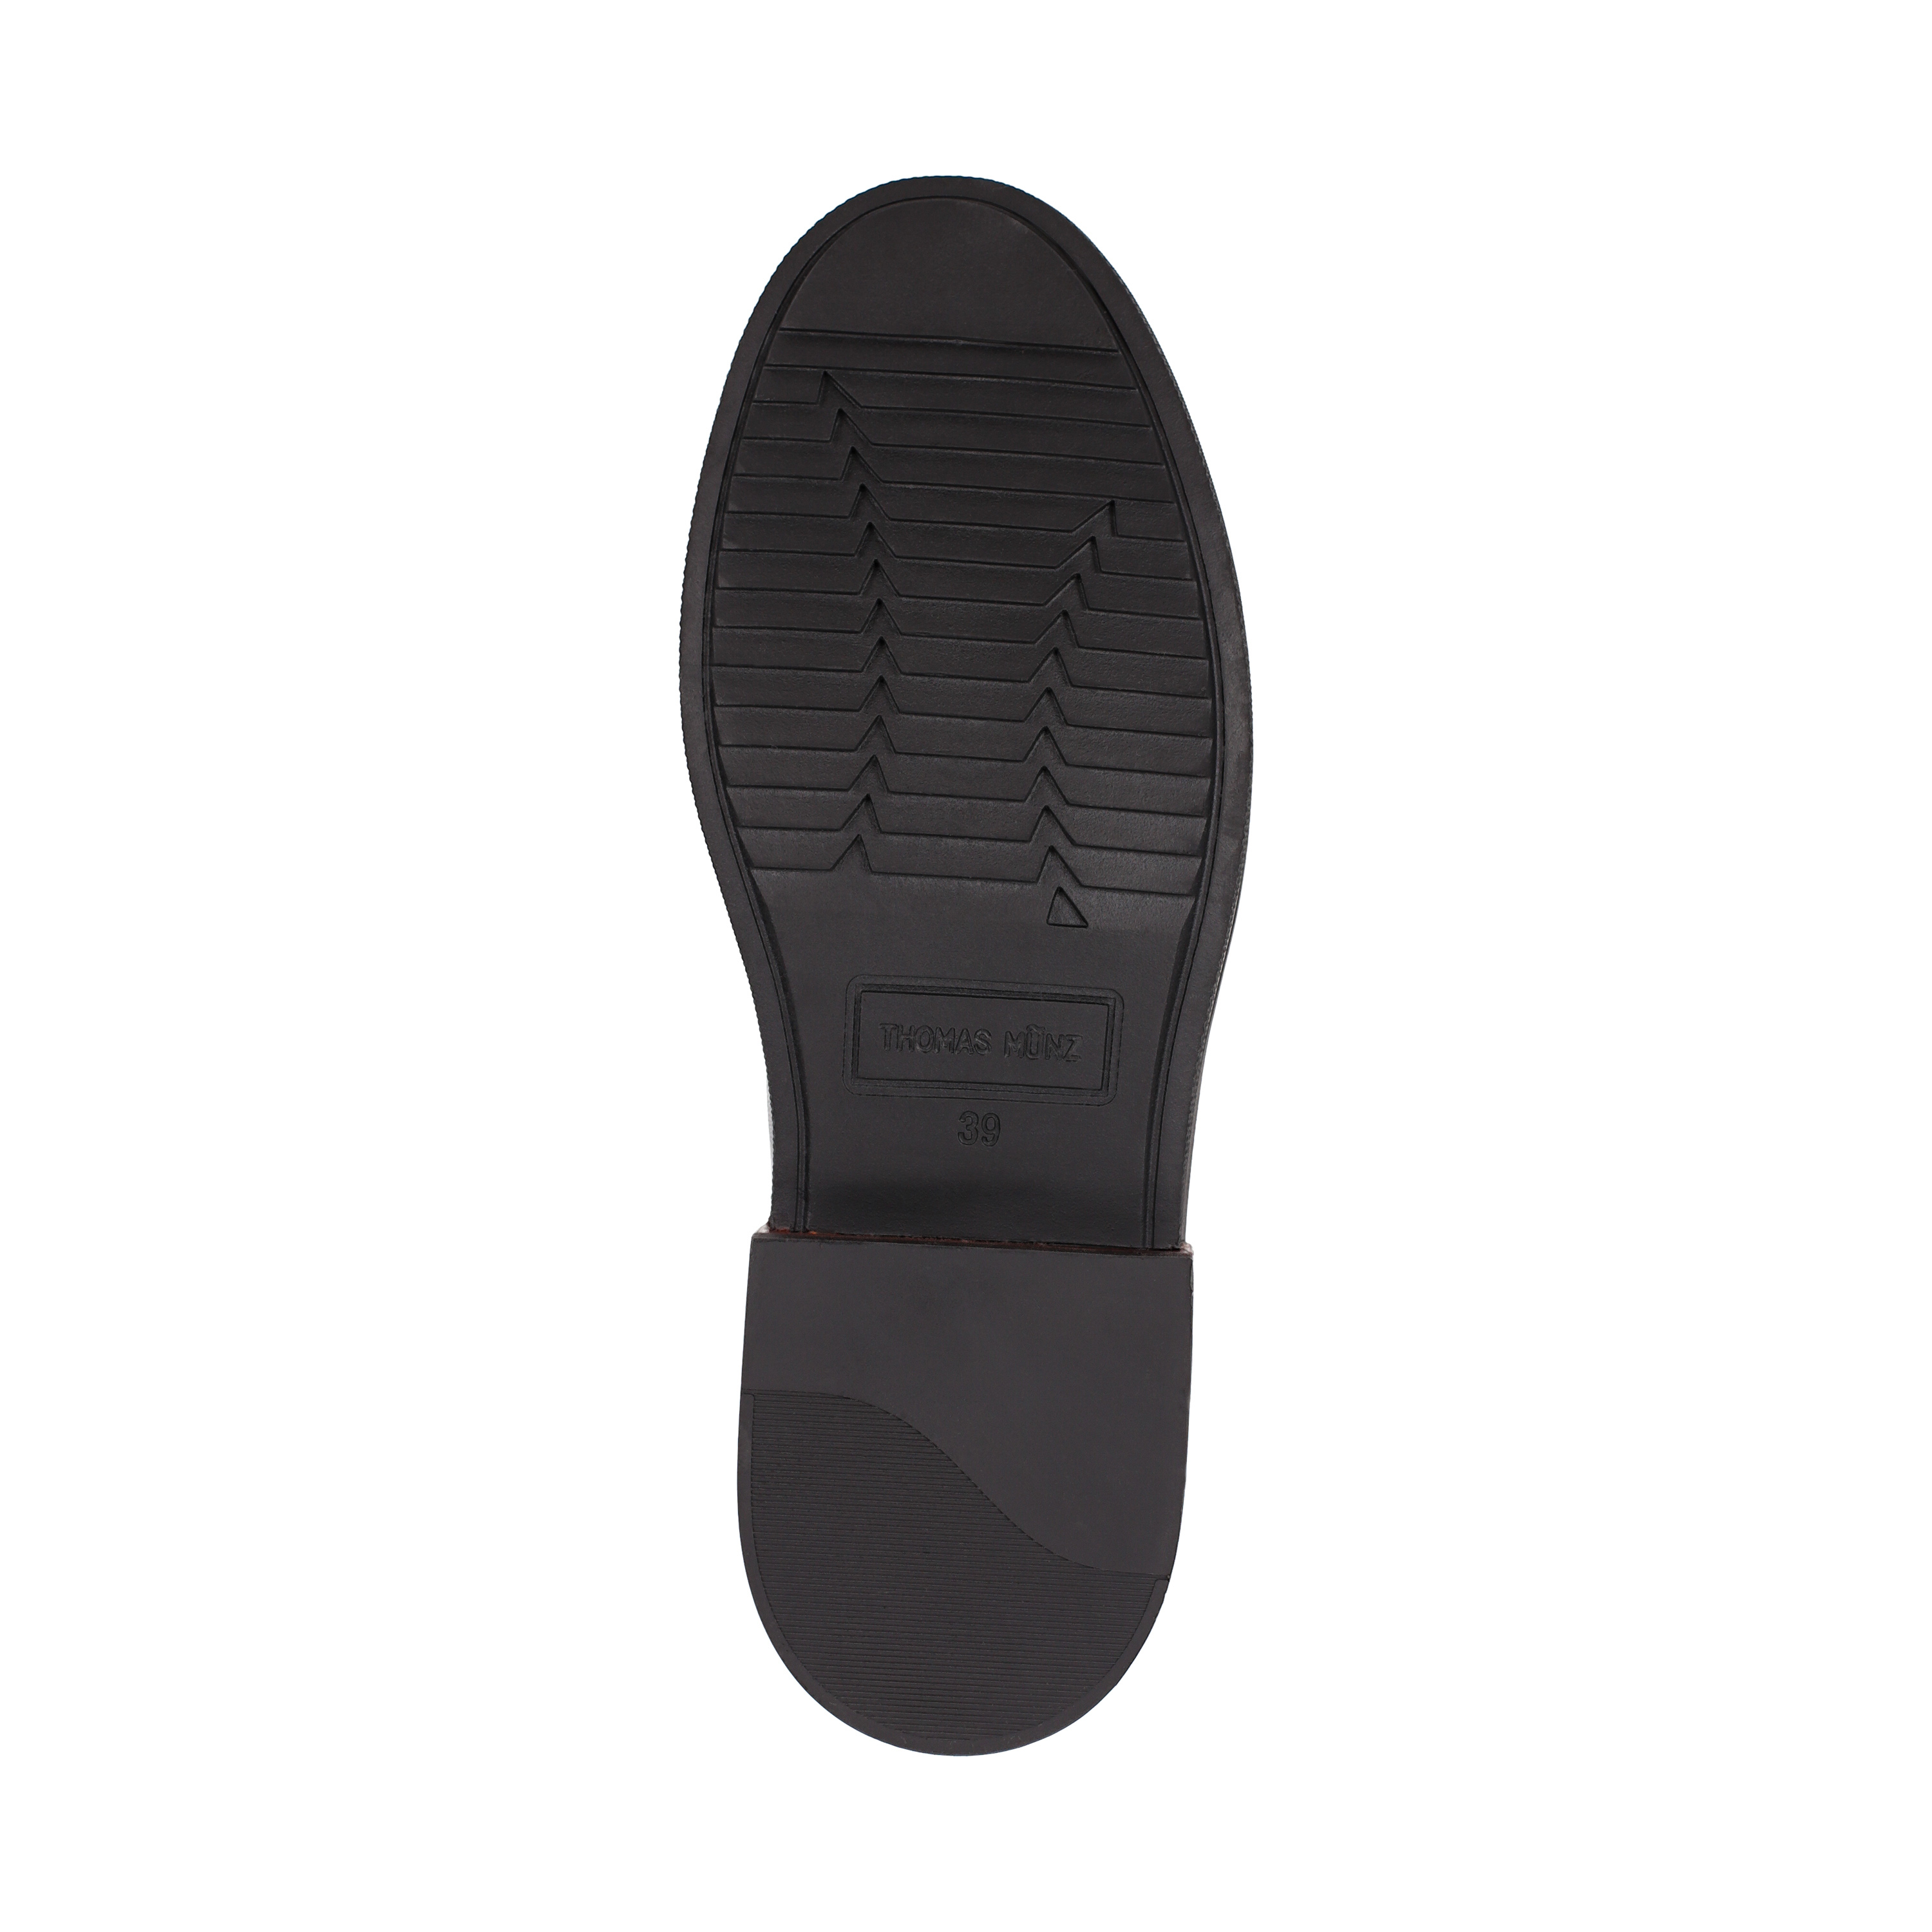 Ботинки Thomas Munz 233-496A-2102, цвет черный, размер 36 - фото 4